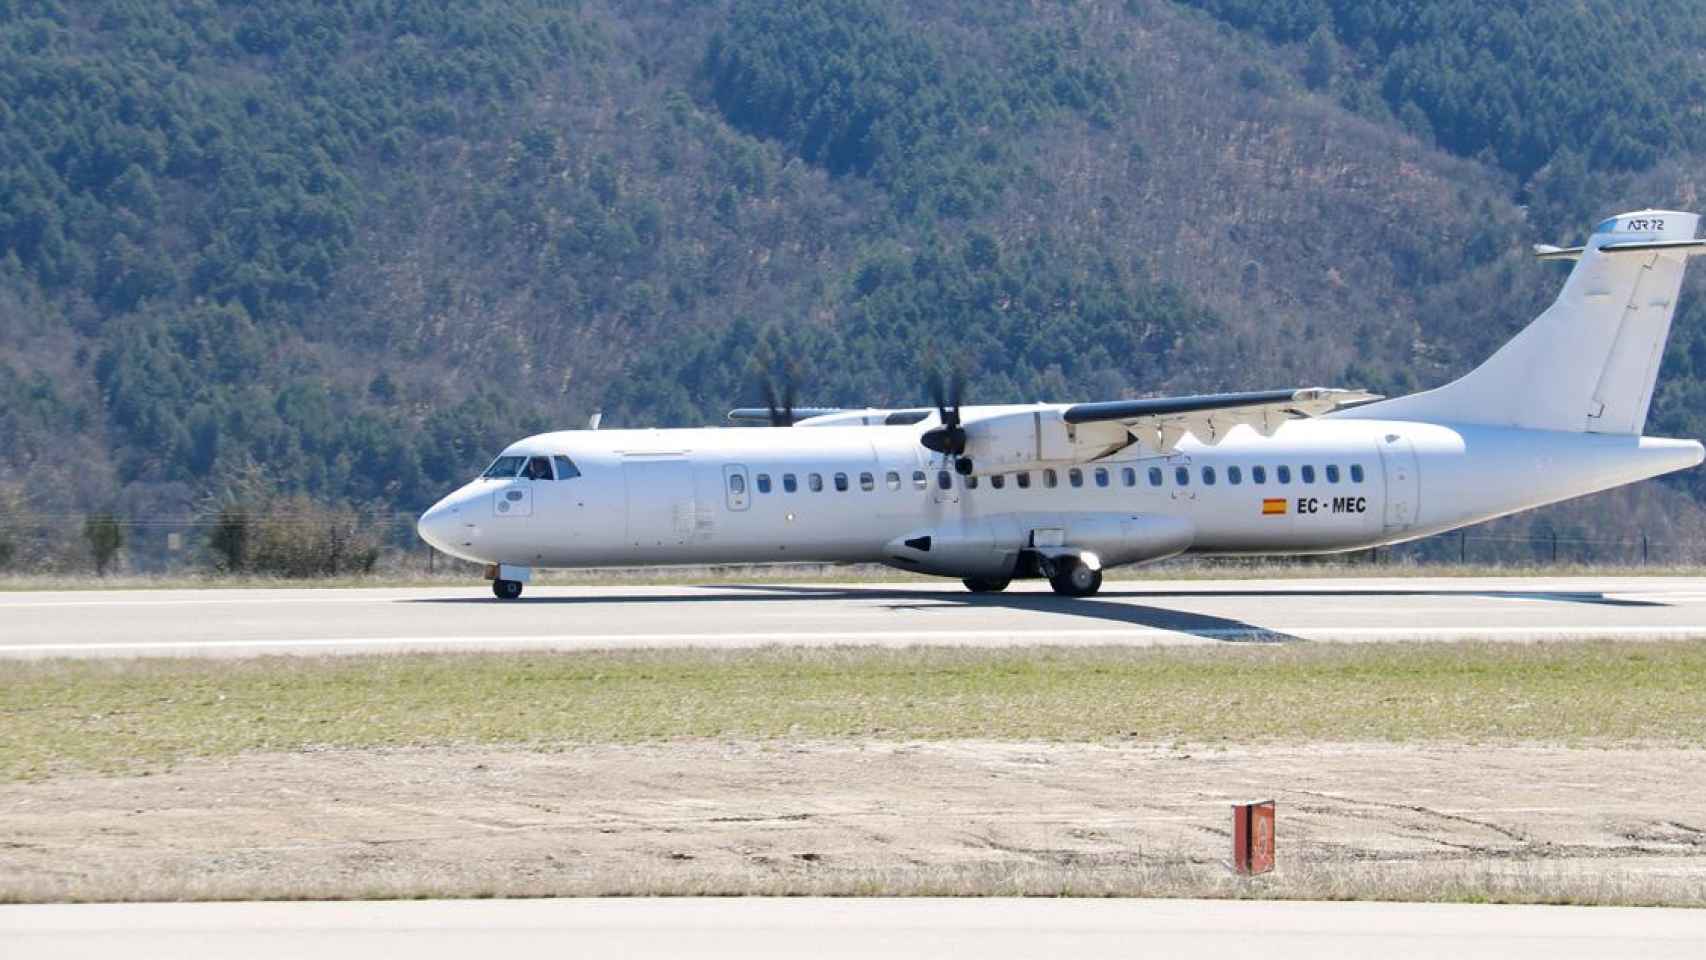 Imagen de un avión en la pista del Aeropuerto de Andorra-La Seu, donde quería operar Air Andorra / CG